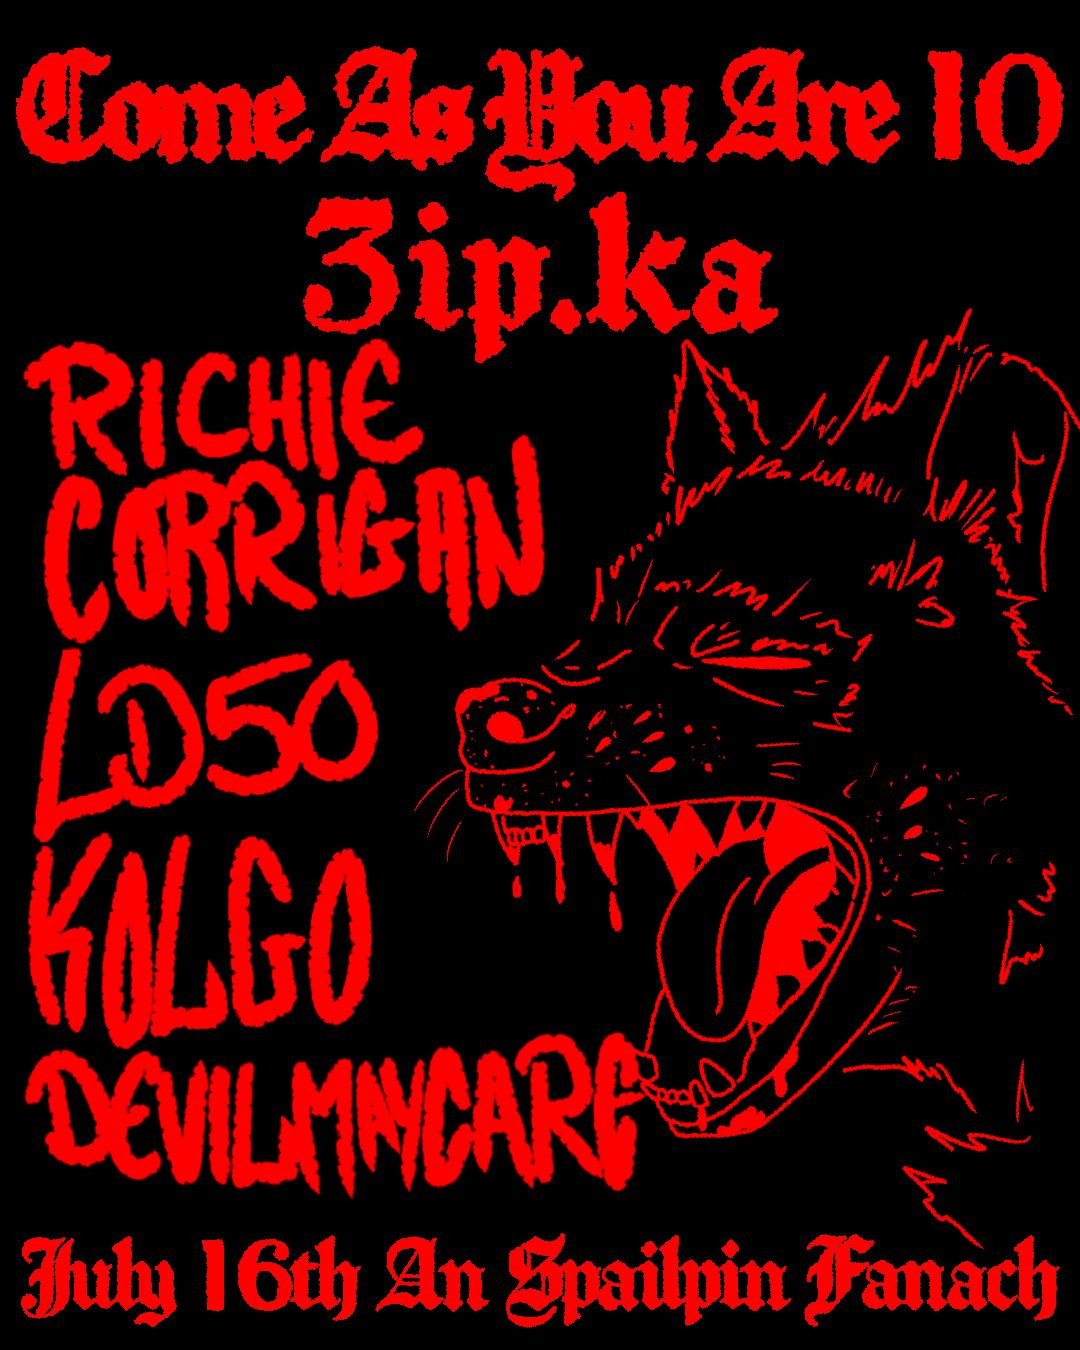 Come as you are 010, Richie Corrigan - Página frontal